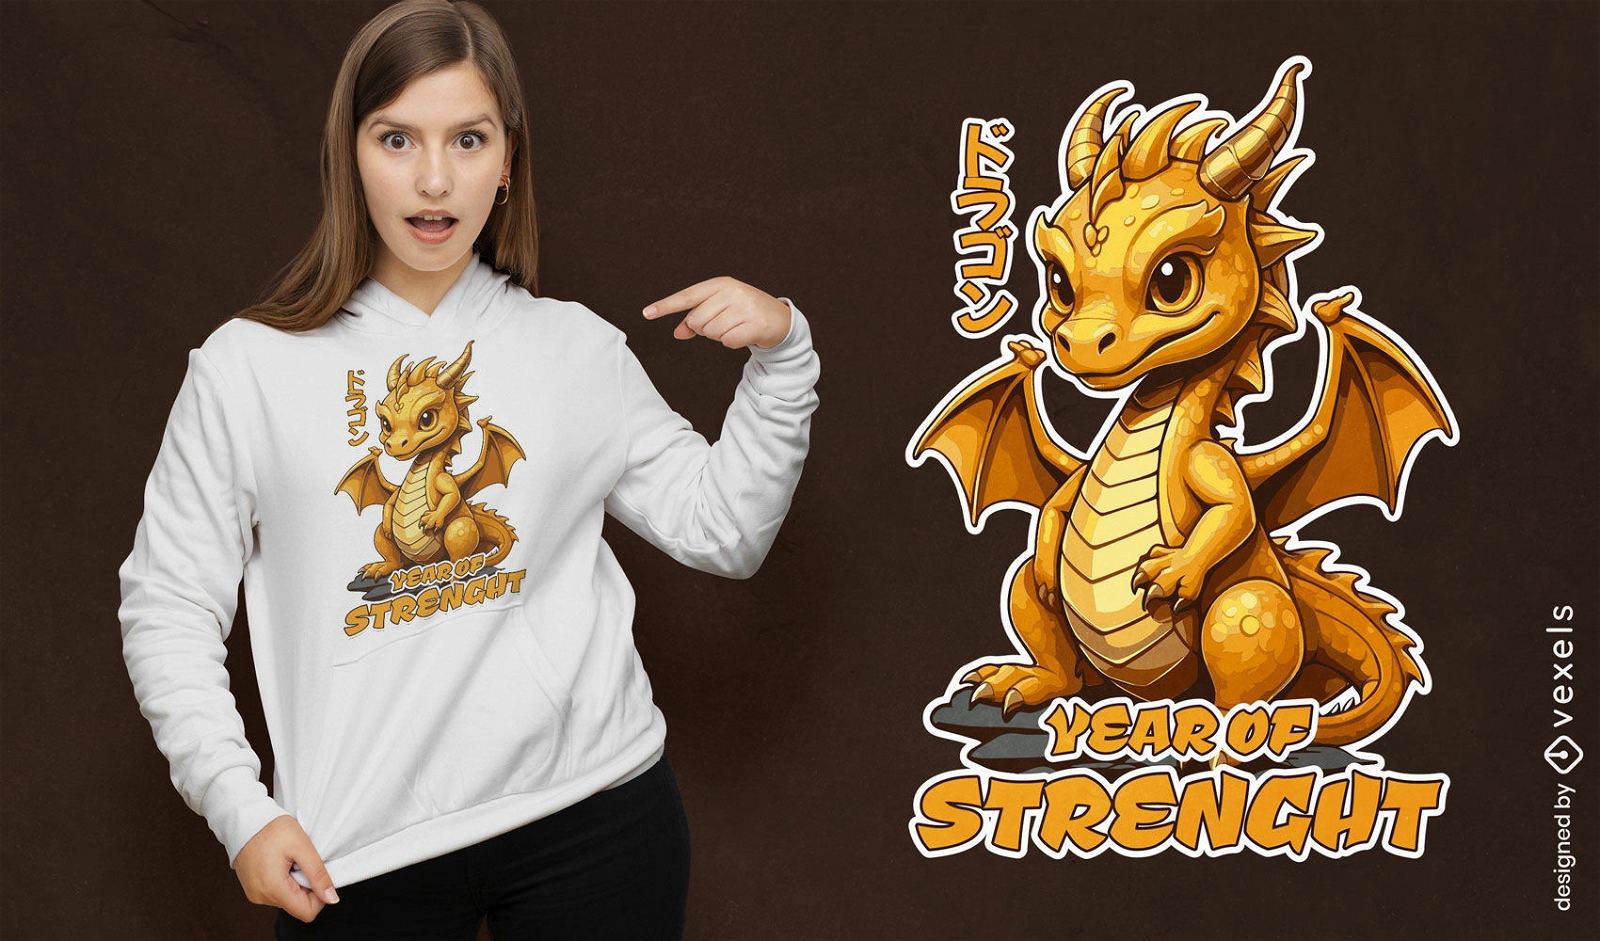 Diseño de camiseta de fuerza del año del dragón.